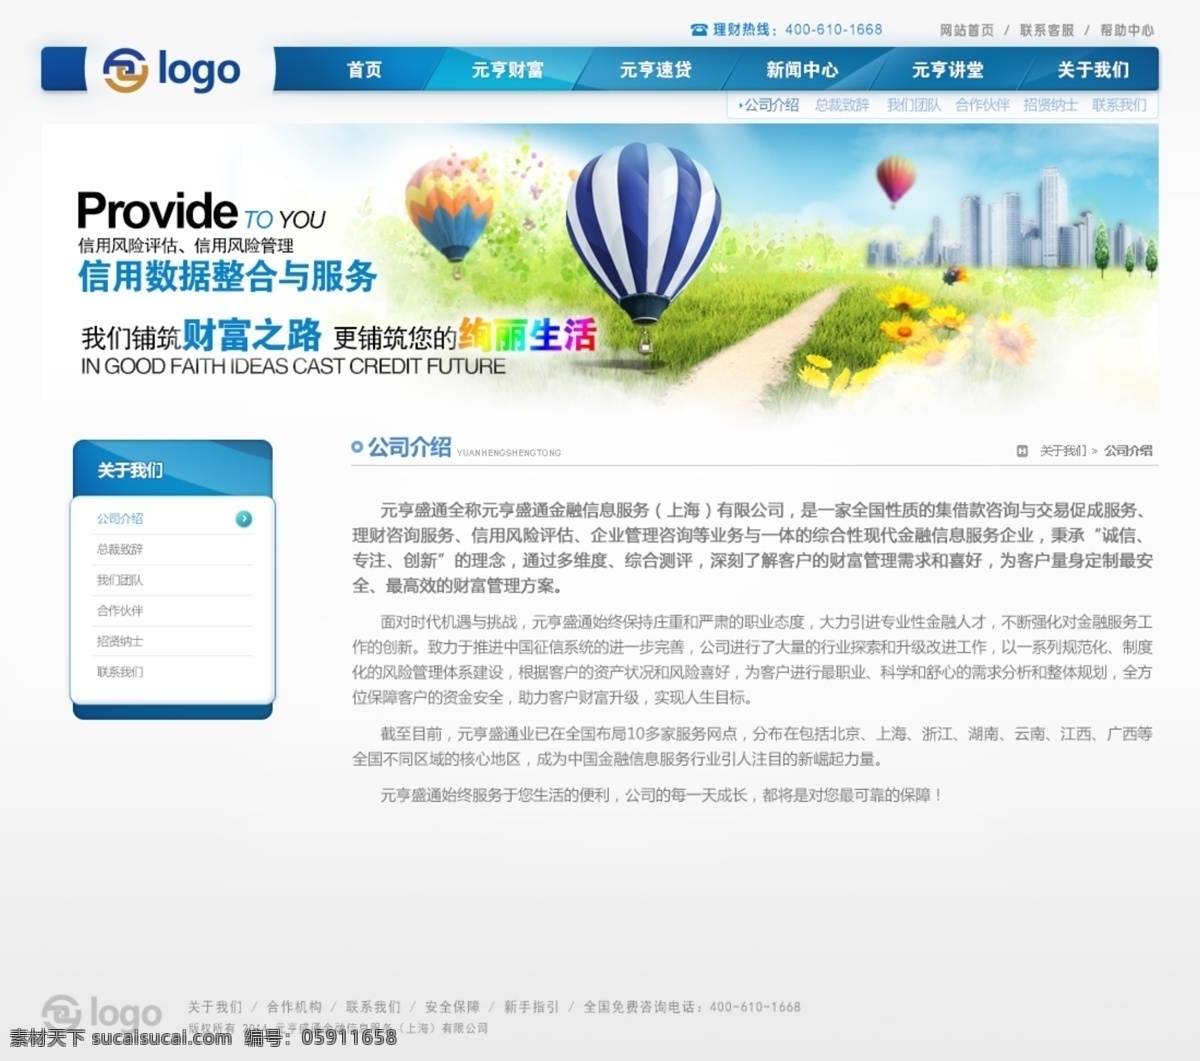 公司网站内页 二级页面 公司网站 简洁大方 公司 网站 web 界面设计 中文模板 白色